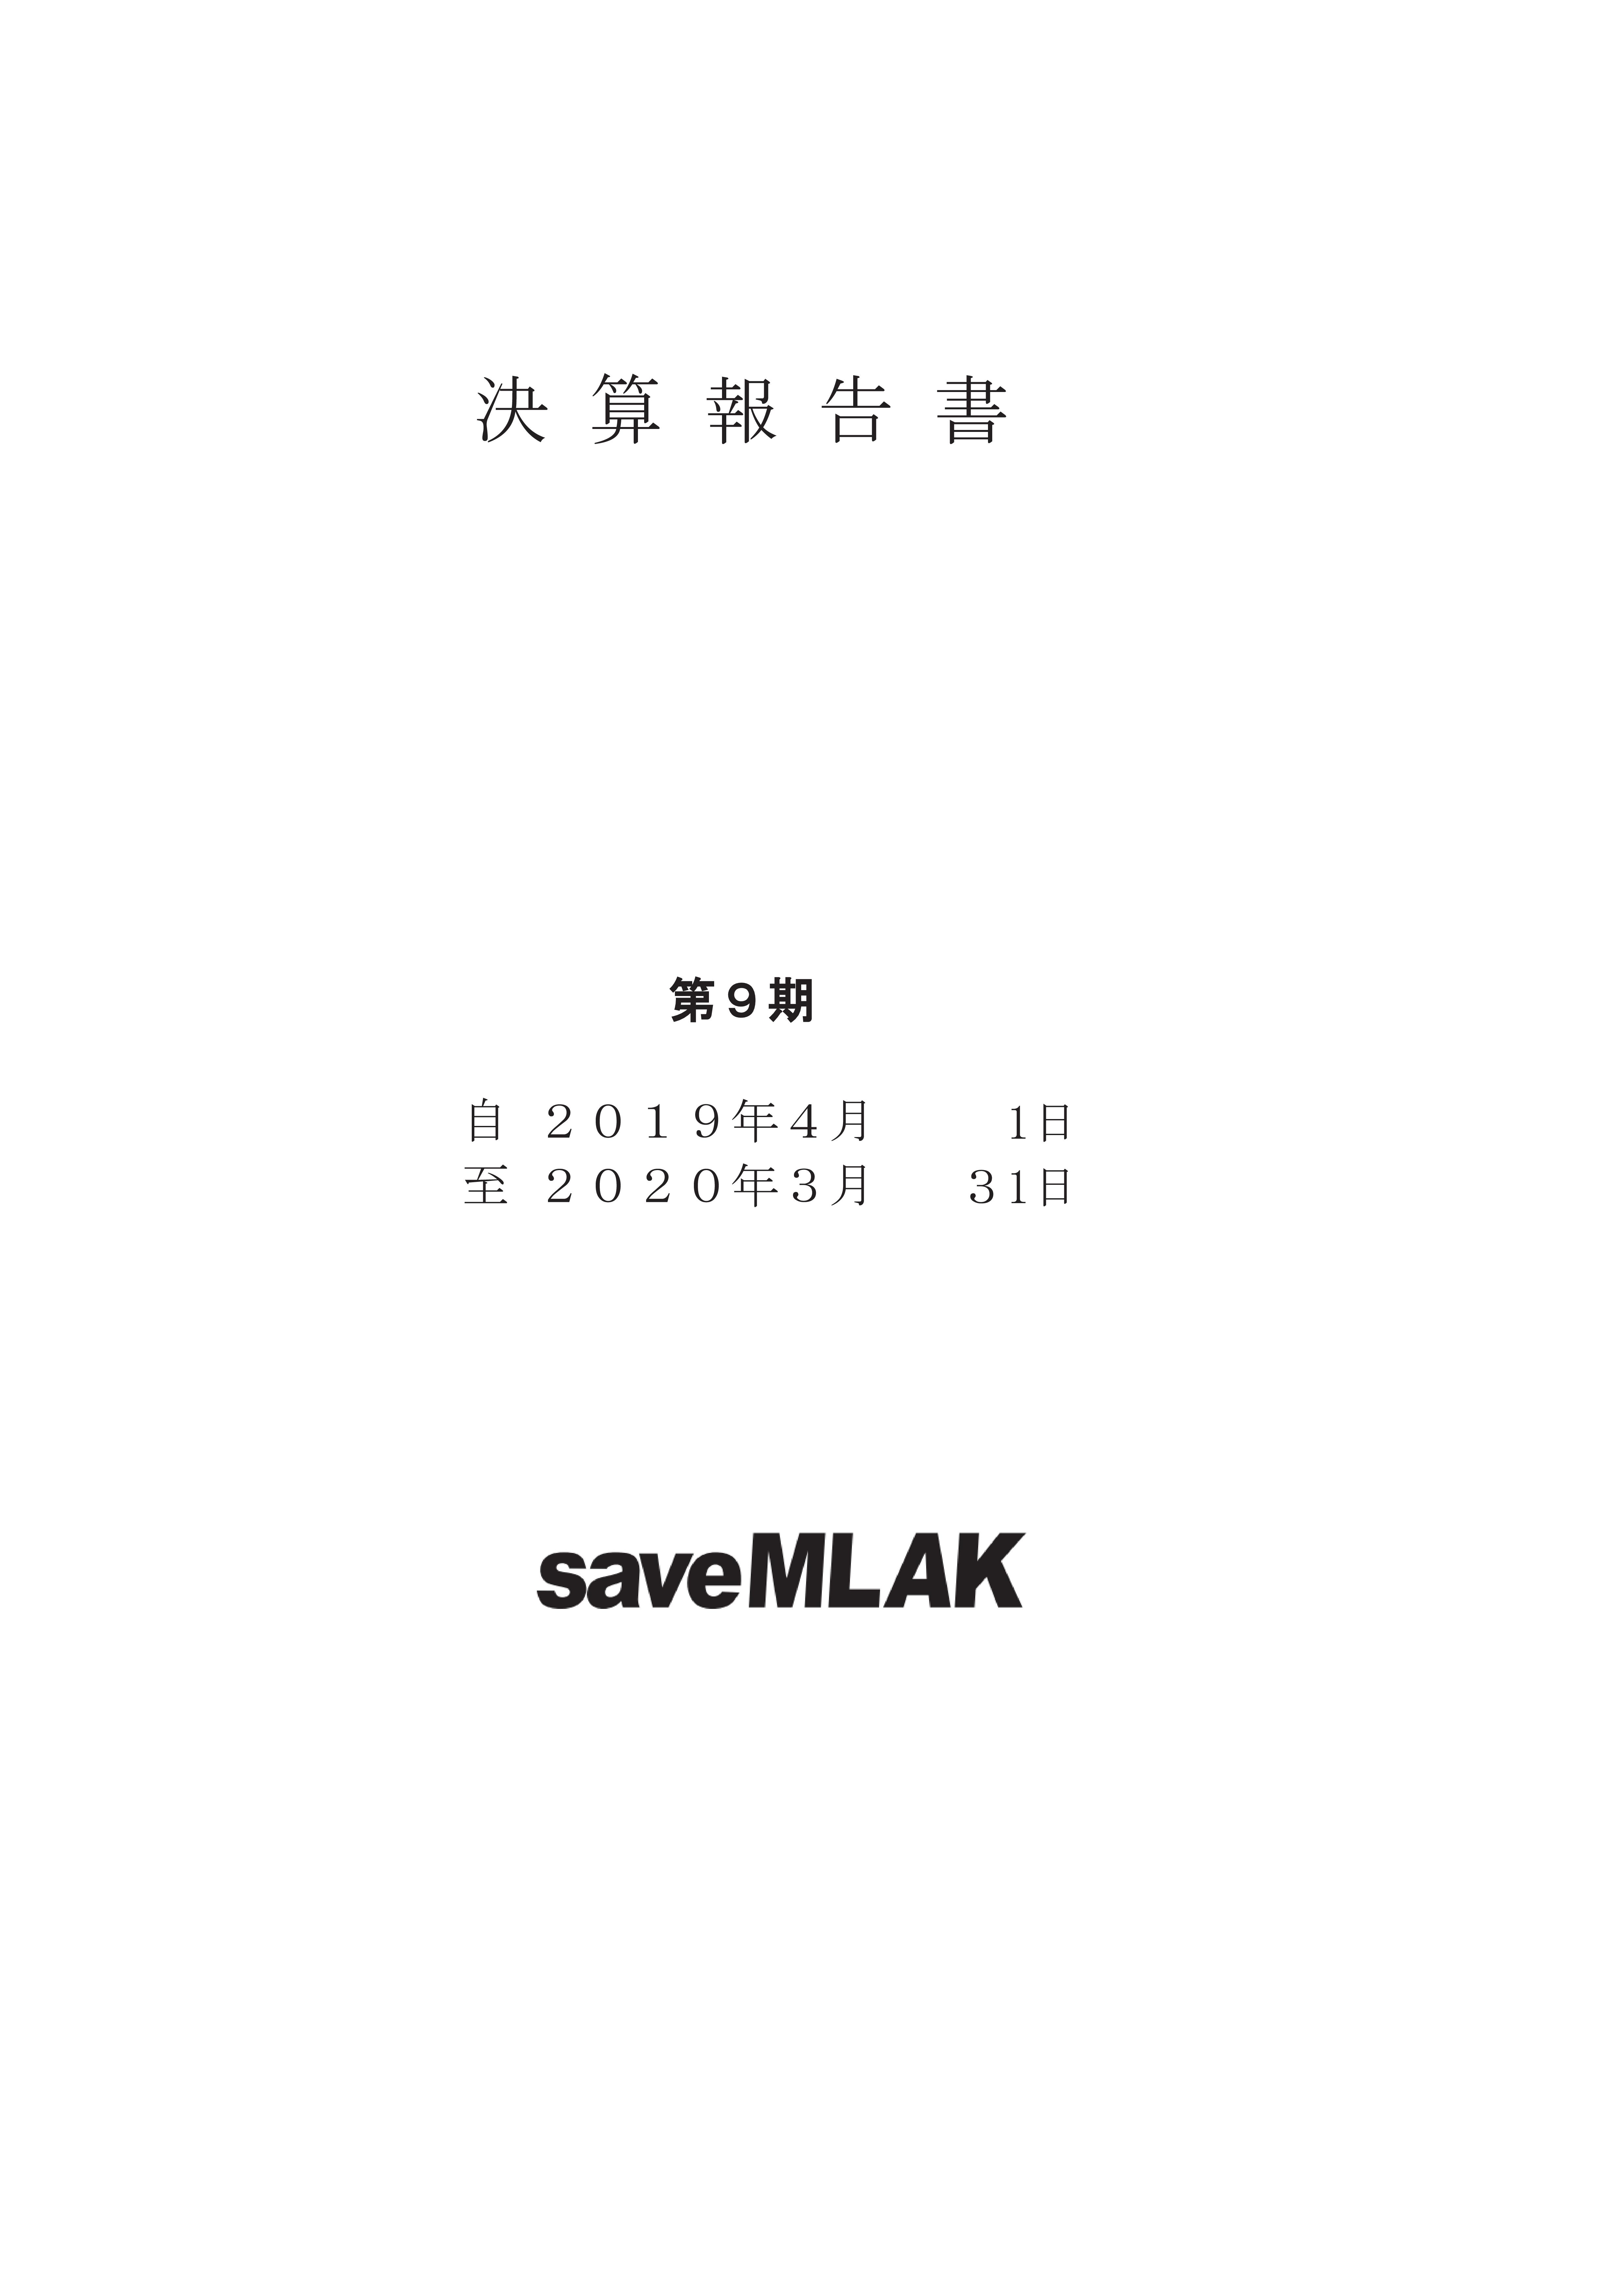 saveMLAK19年度決算報告書 表紙.jpg